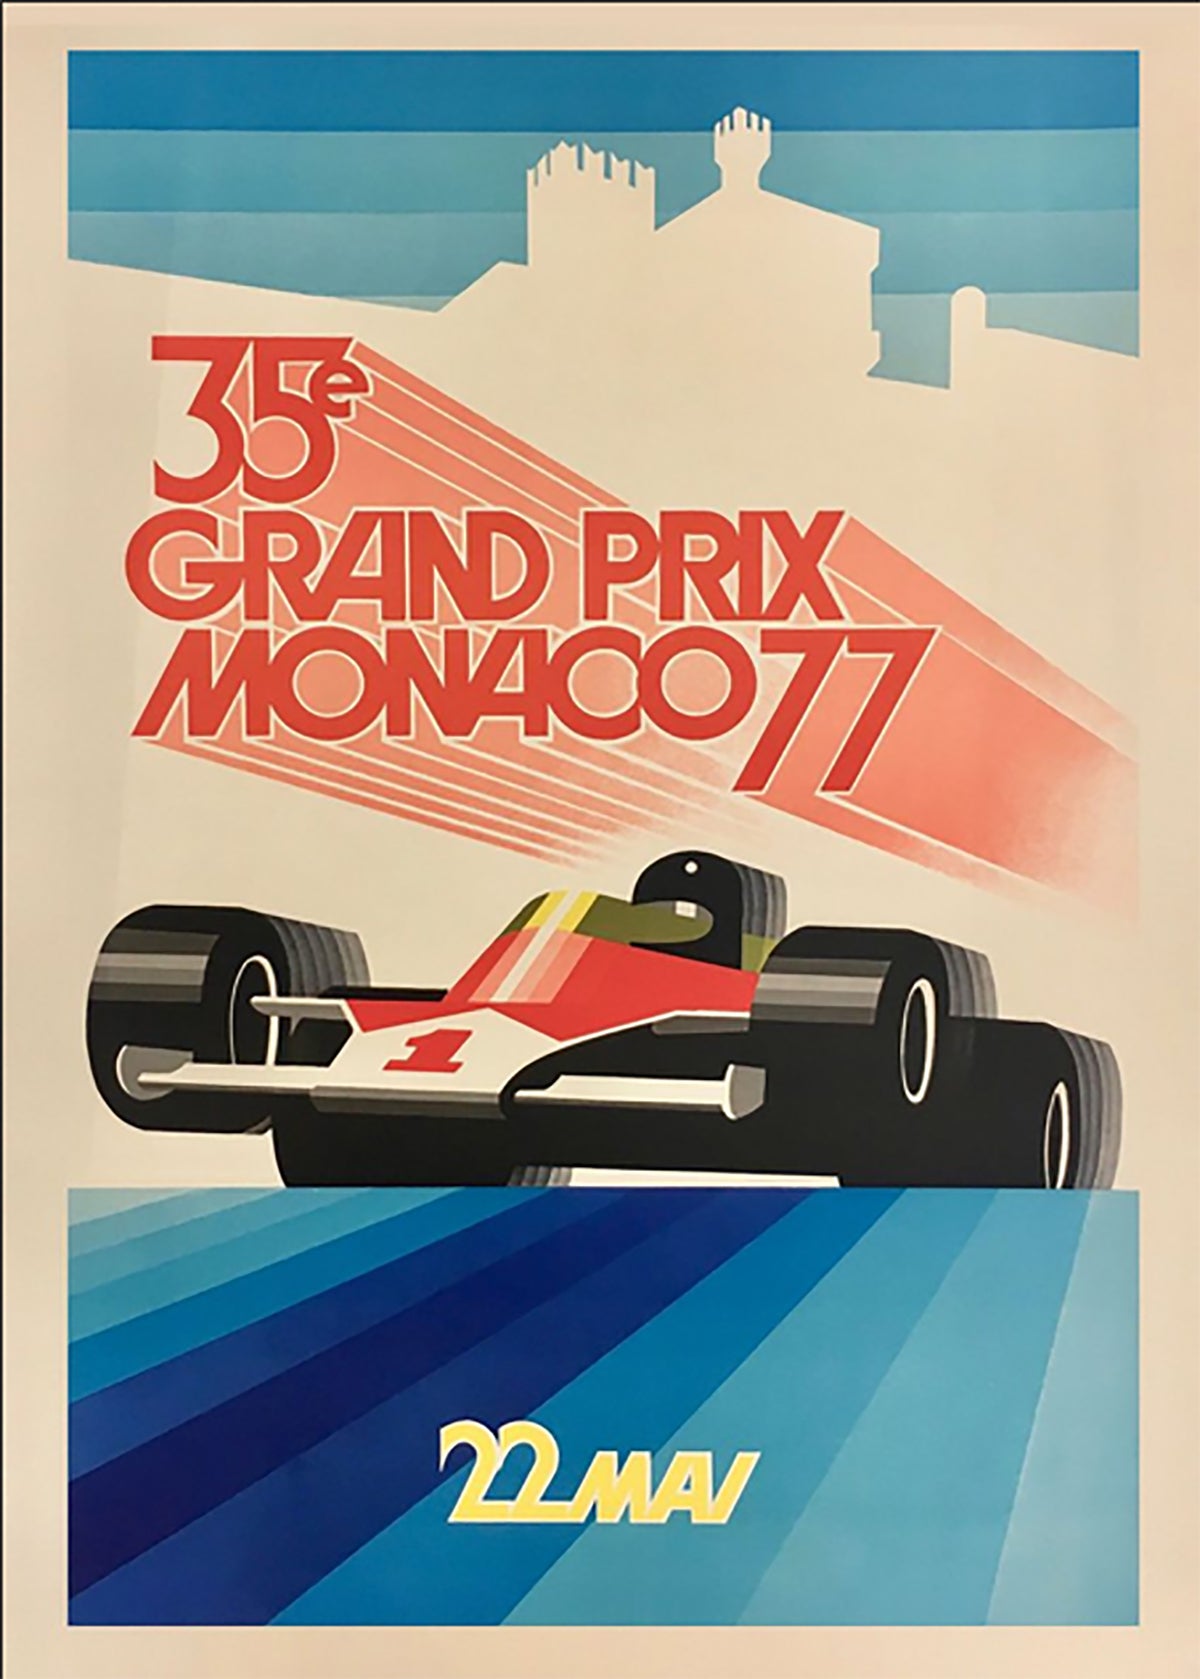 TPFLiving Poster Leinwand / Berühmte Rennen - Vintage - Großer Preis von Monaco 22. Mai 1955 / Verschiedene Größen - OHNE Rahmen - Modell 13